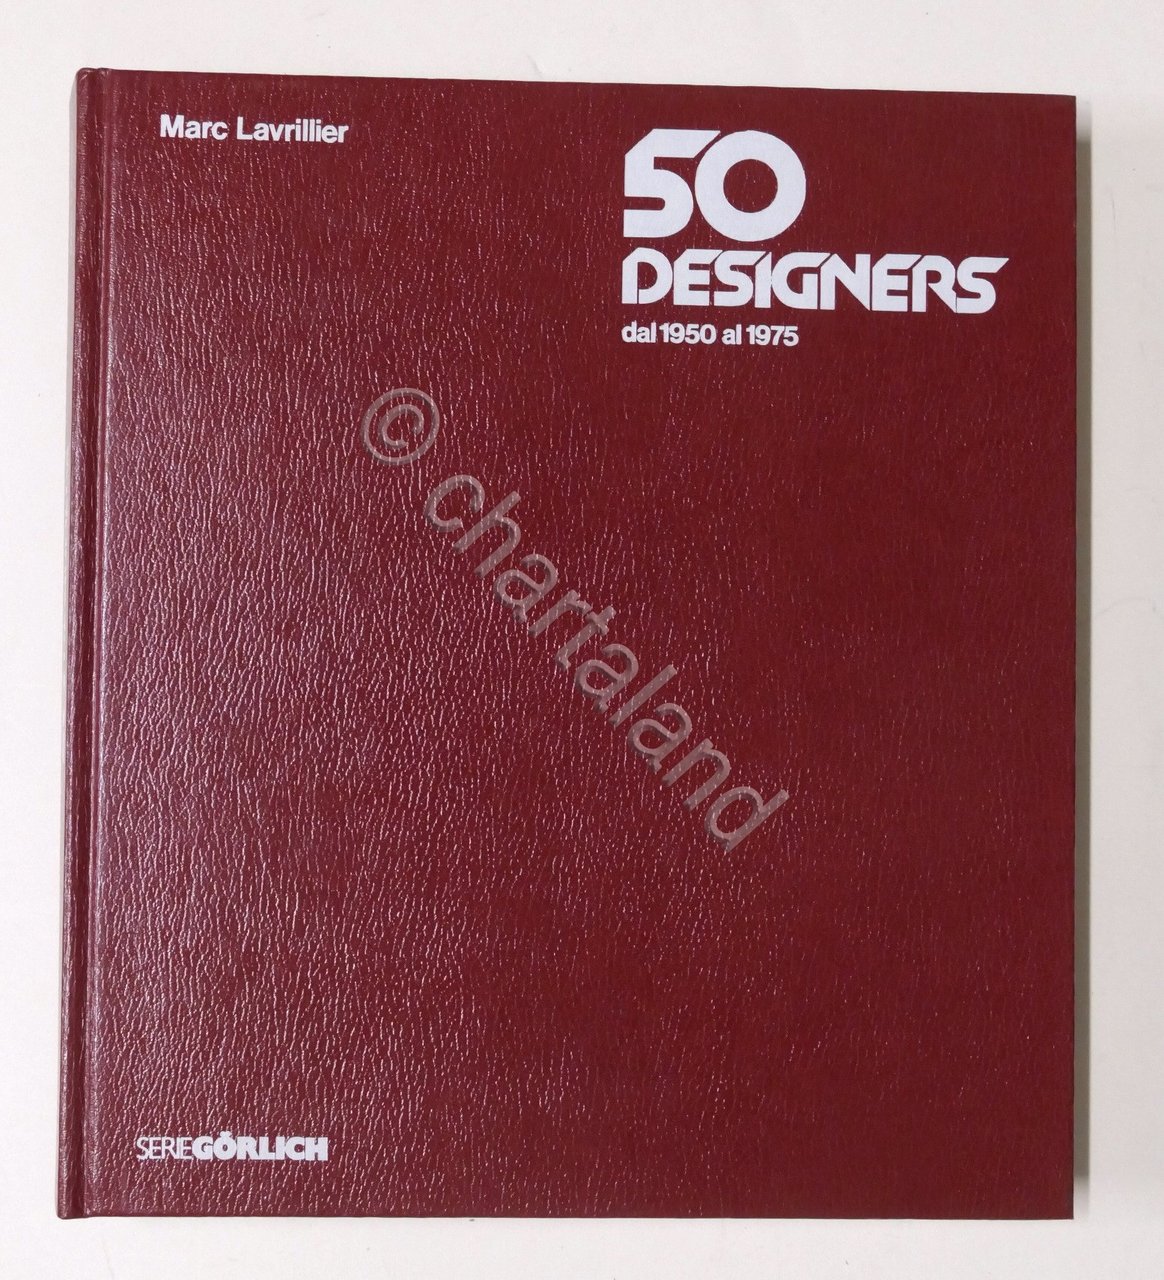 Marc Lavrillier - 50 designer dal 1950 al 1975 - …